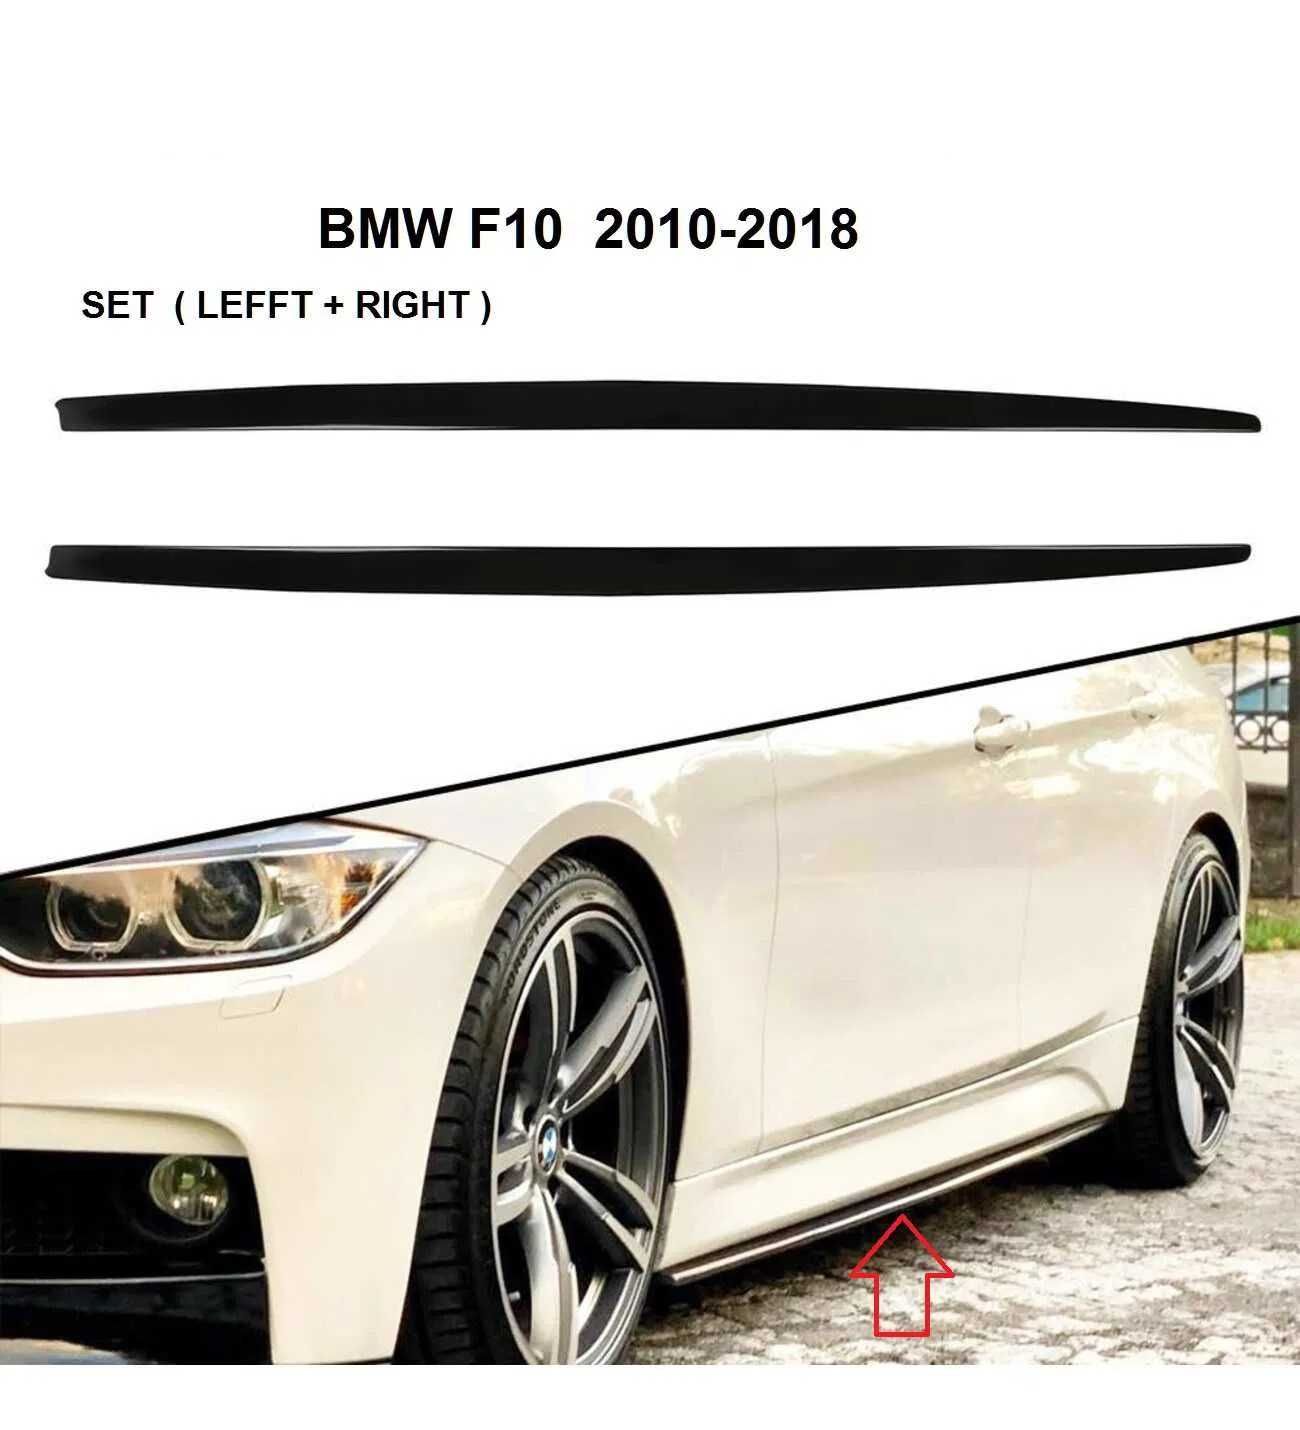 Добавка за Праг BMW F10 (L+R) 2010-18 (GG-M74)